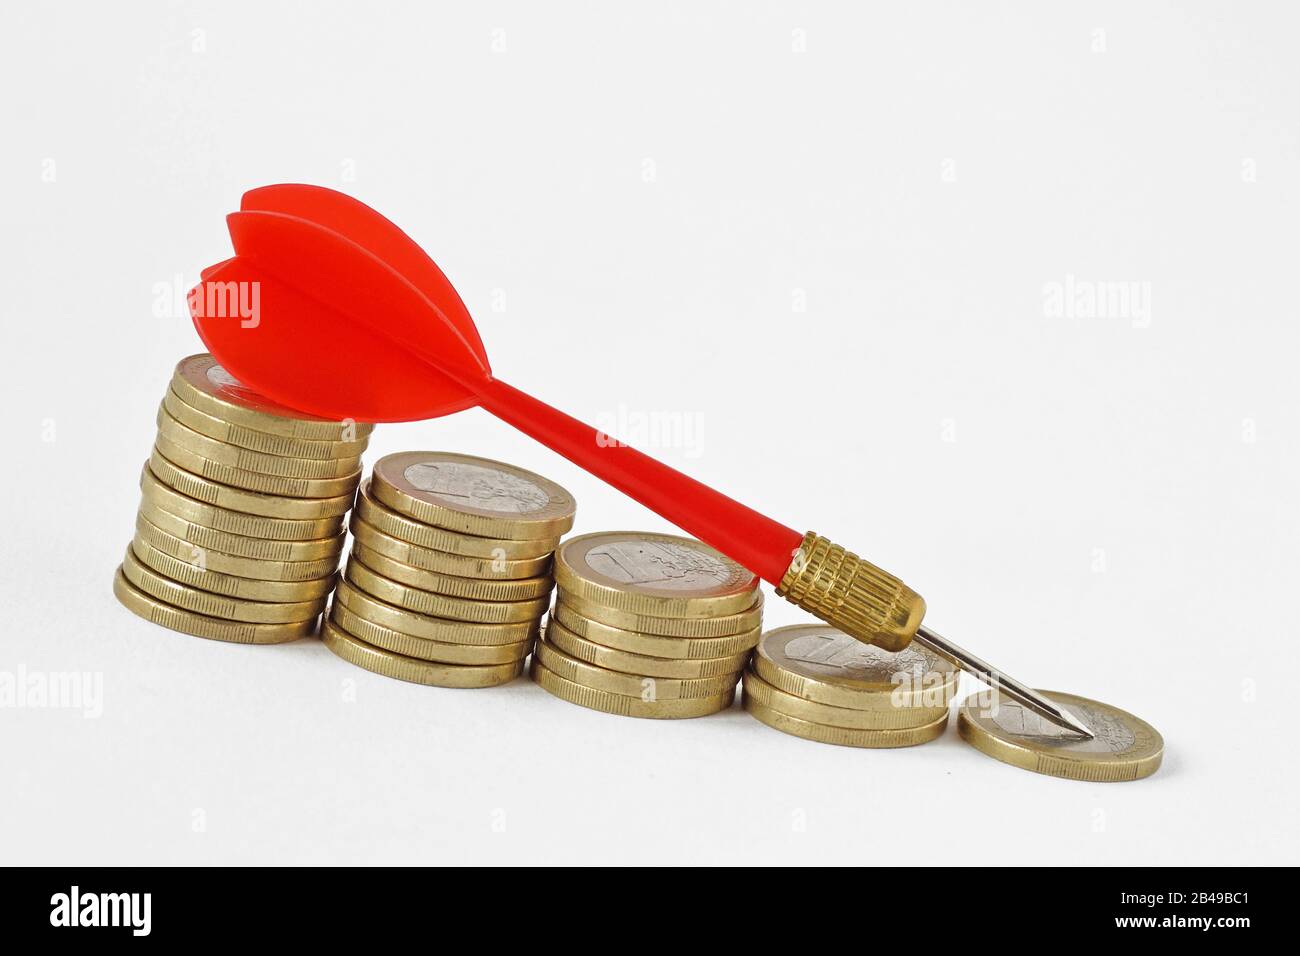 Roter Pfeil auf sinkenden gestapelten Münzen - Geldverlust Konzept Stockfoto